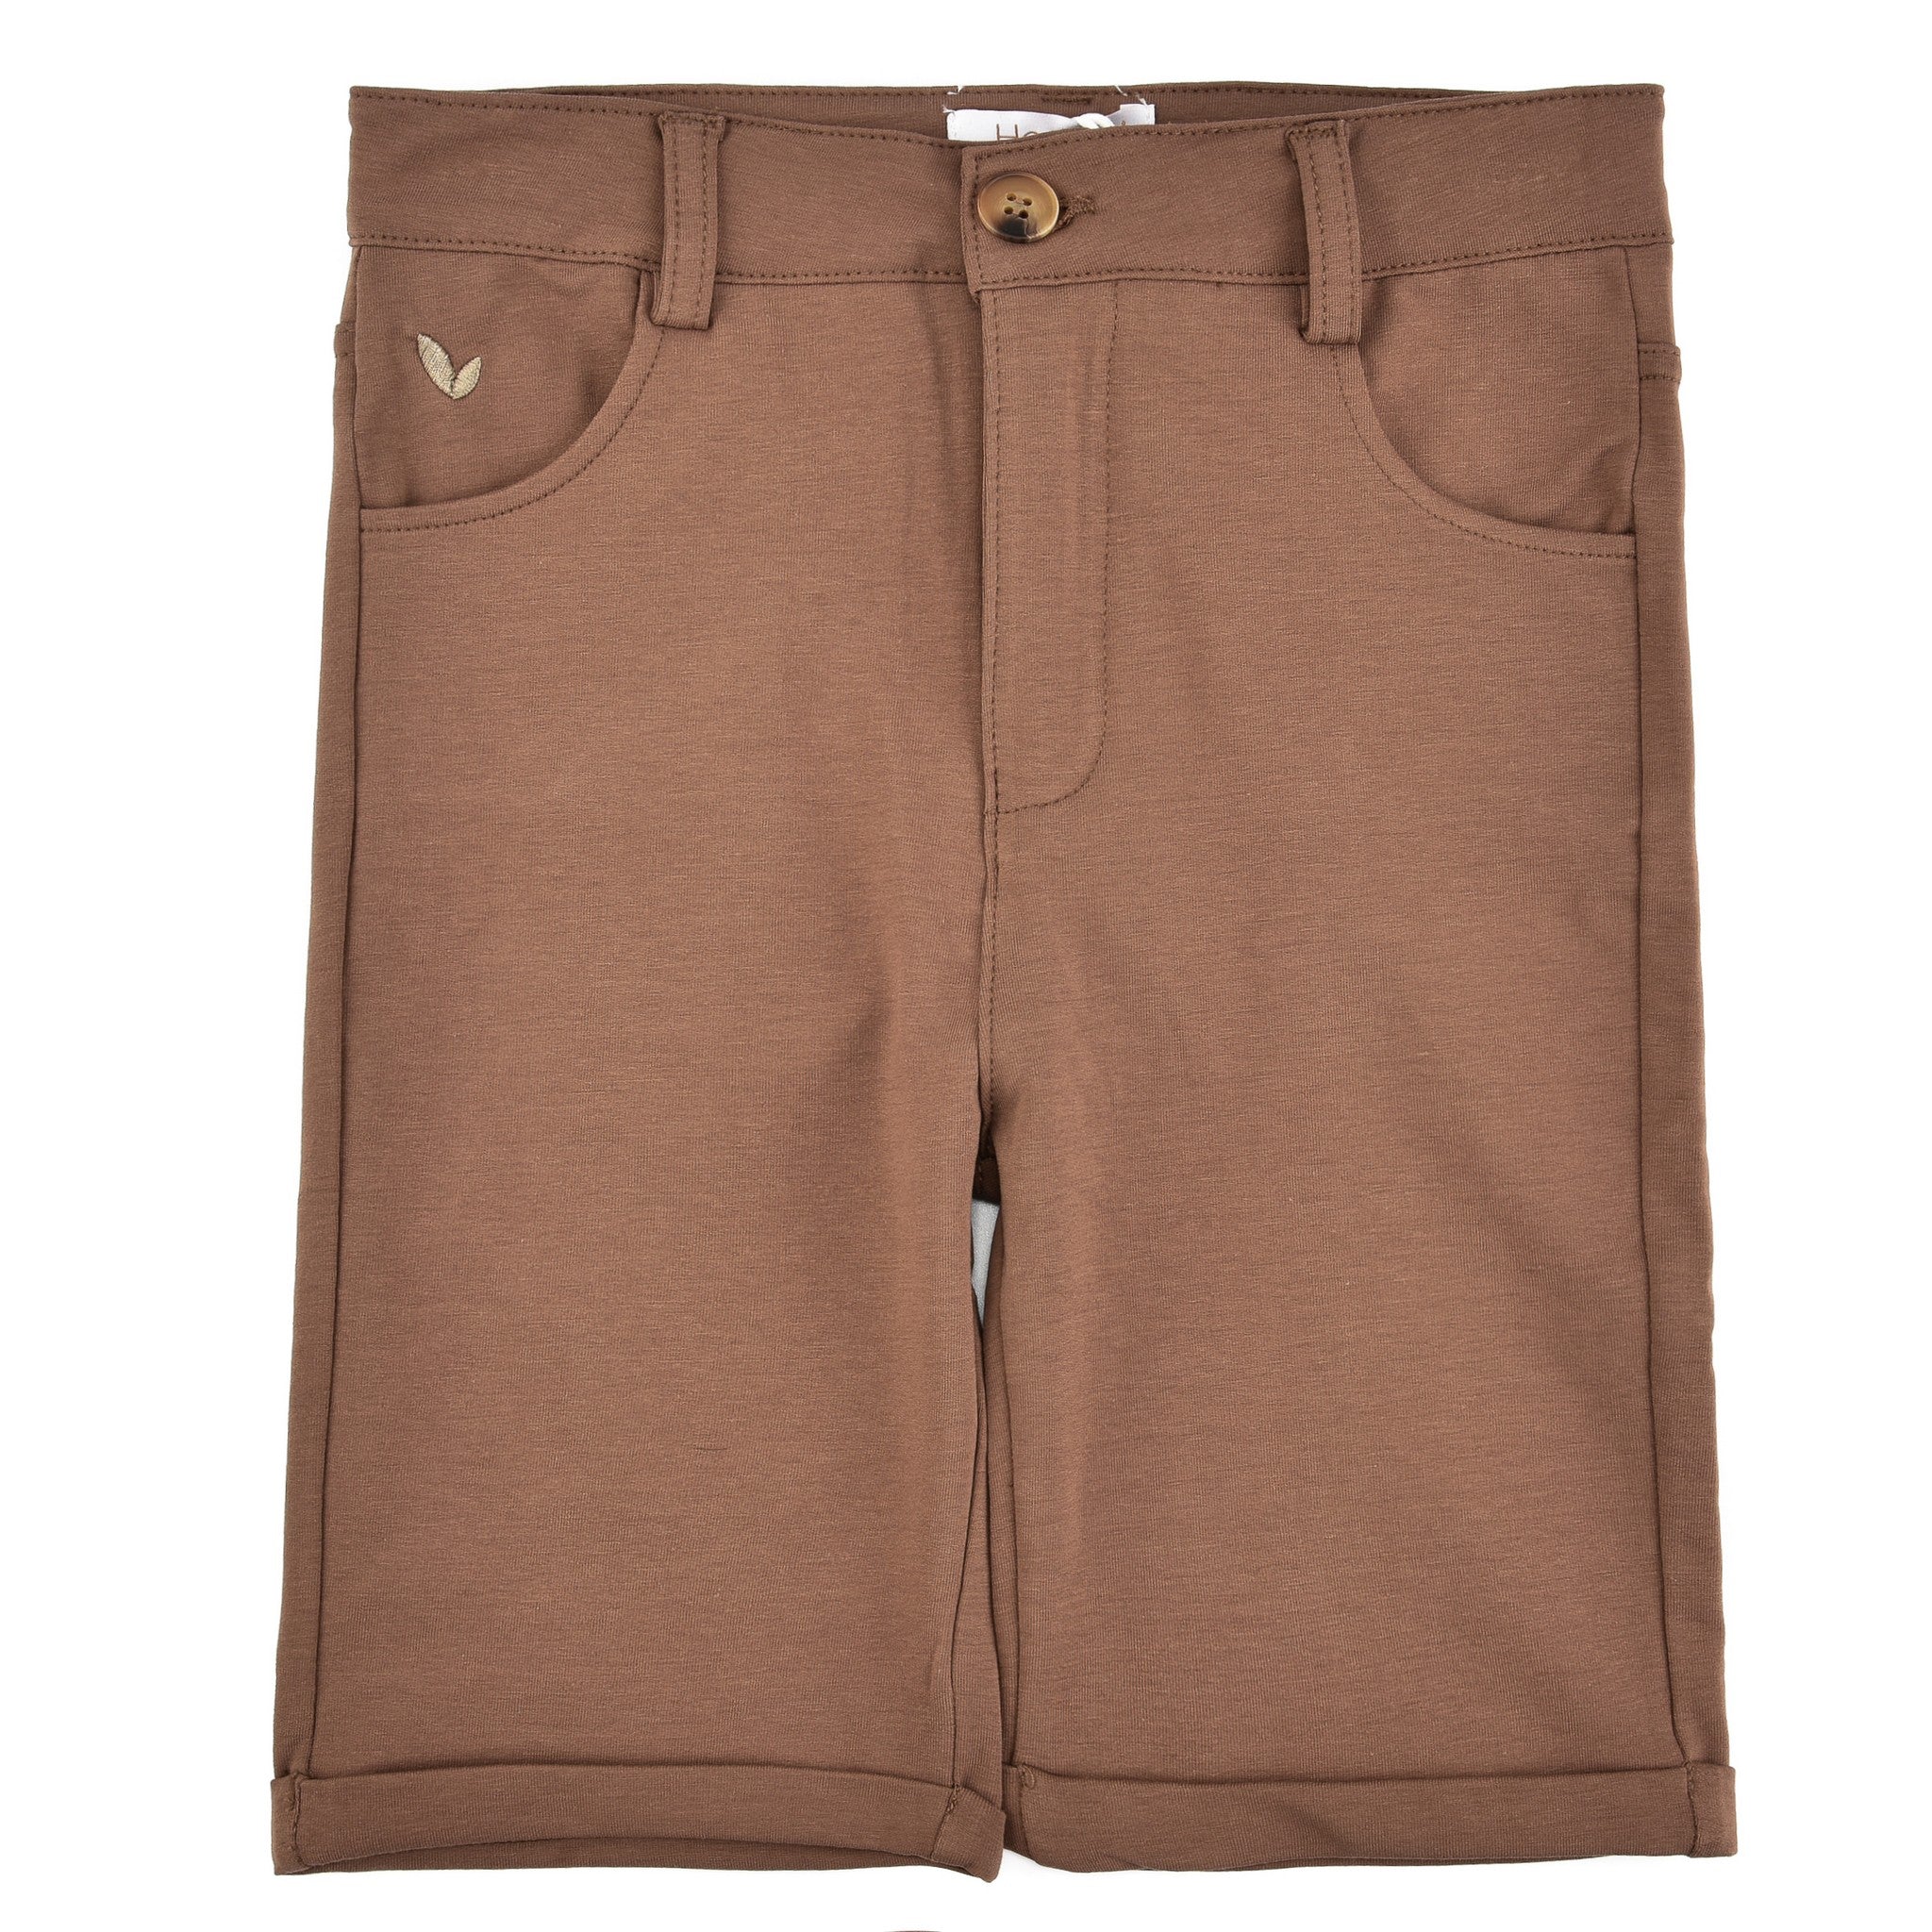 Hadas Comfort Soft Shorts - Kidichic